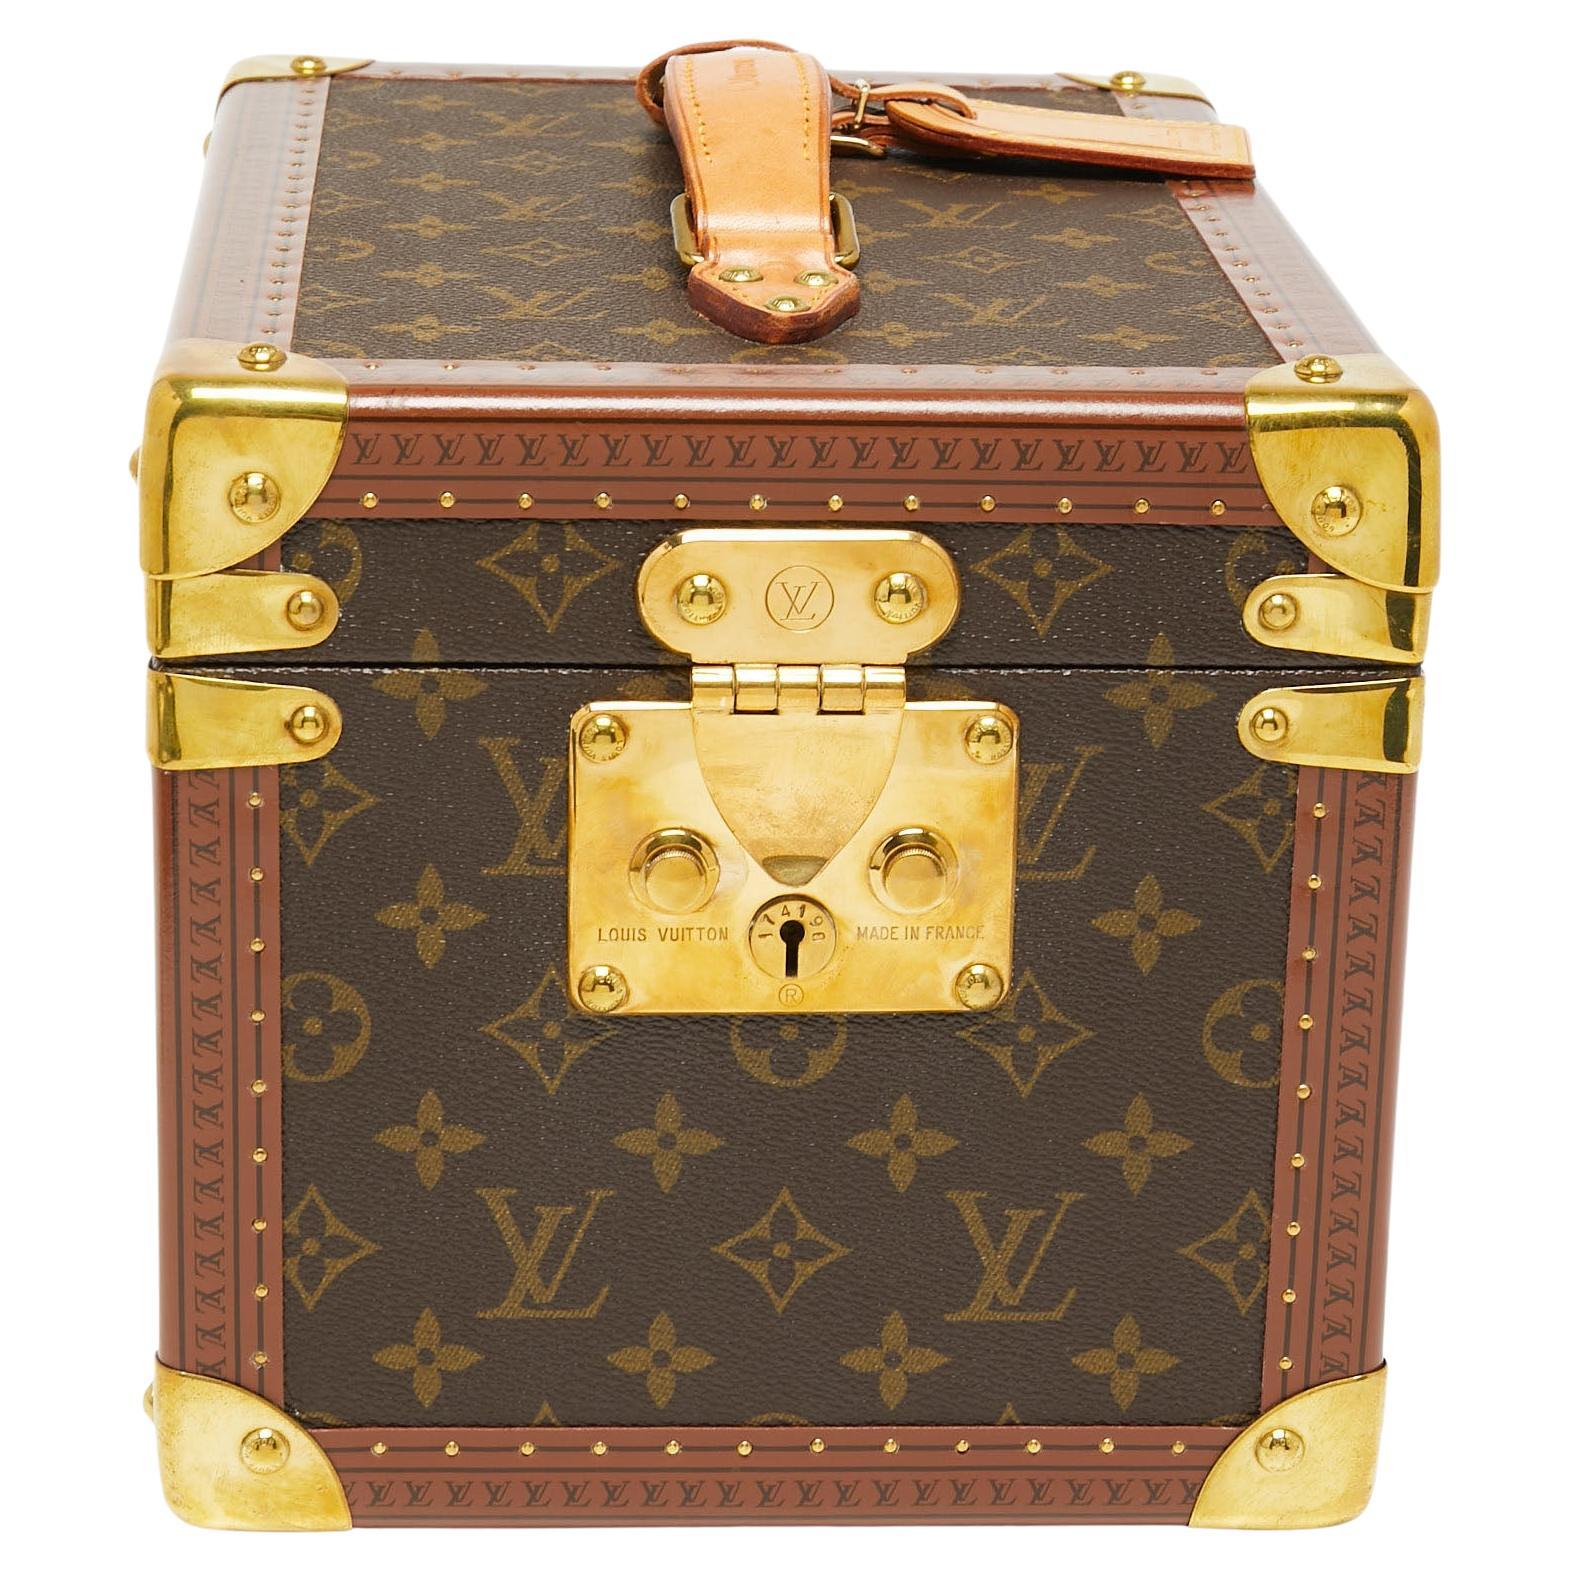 Louis Vuitton Monogram Canvas Beauty Case Trunk